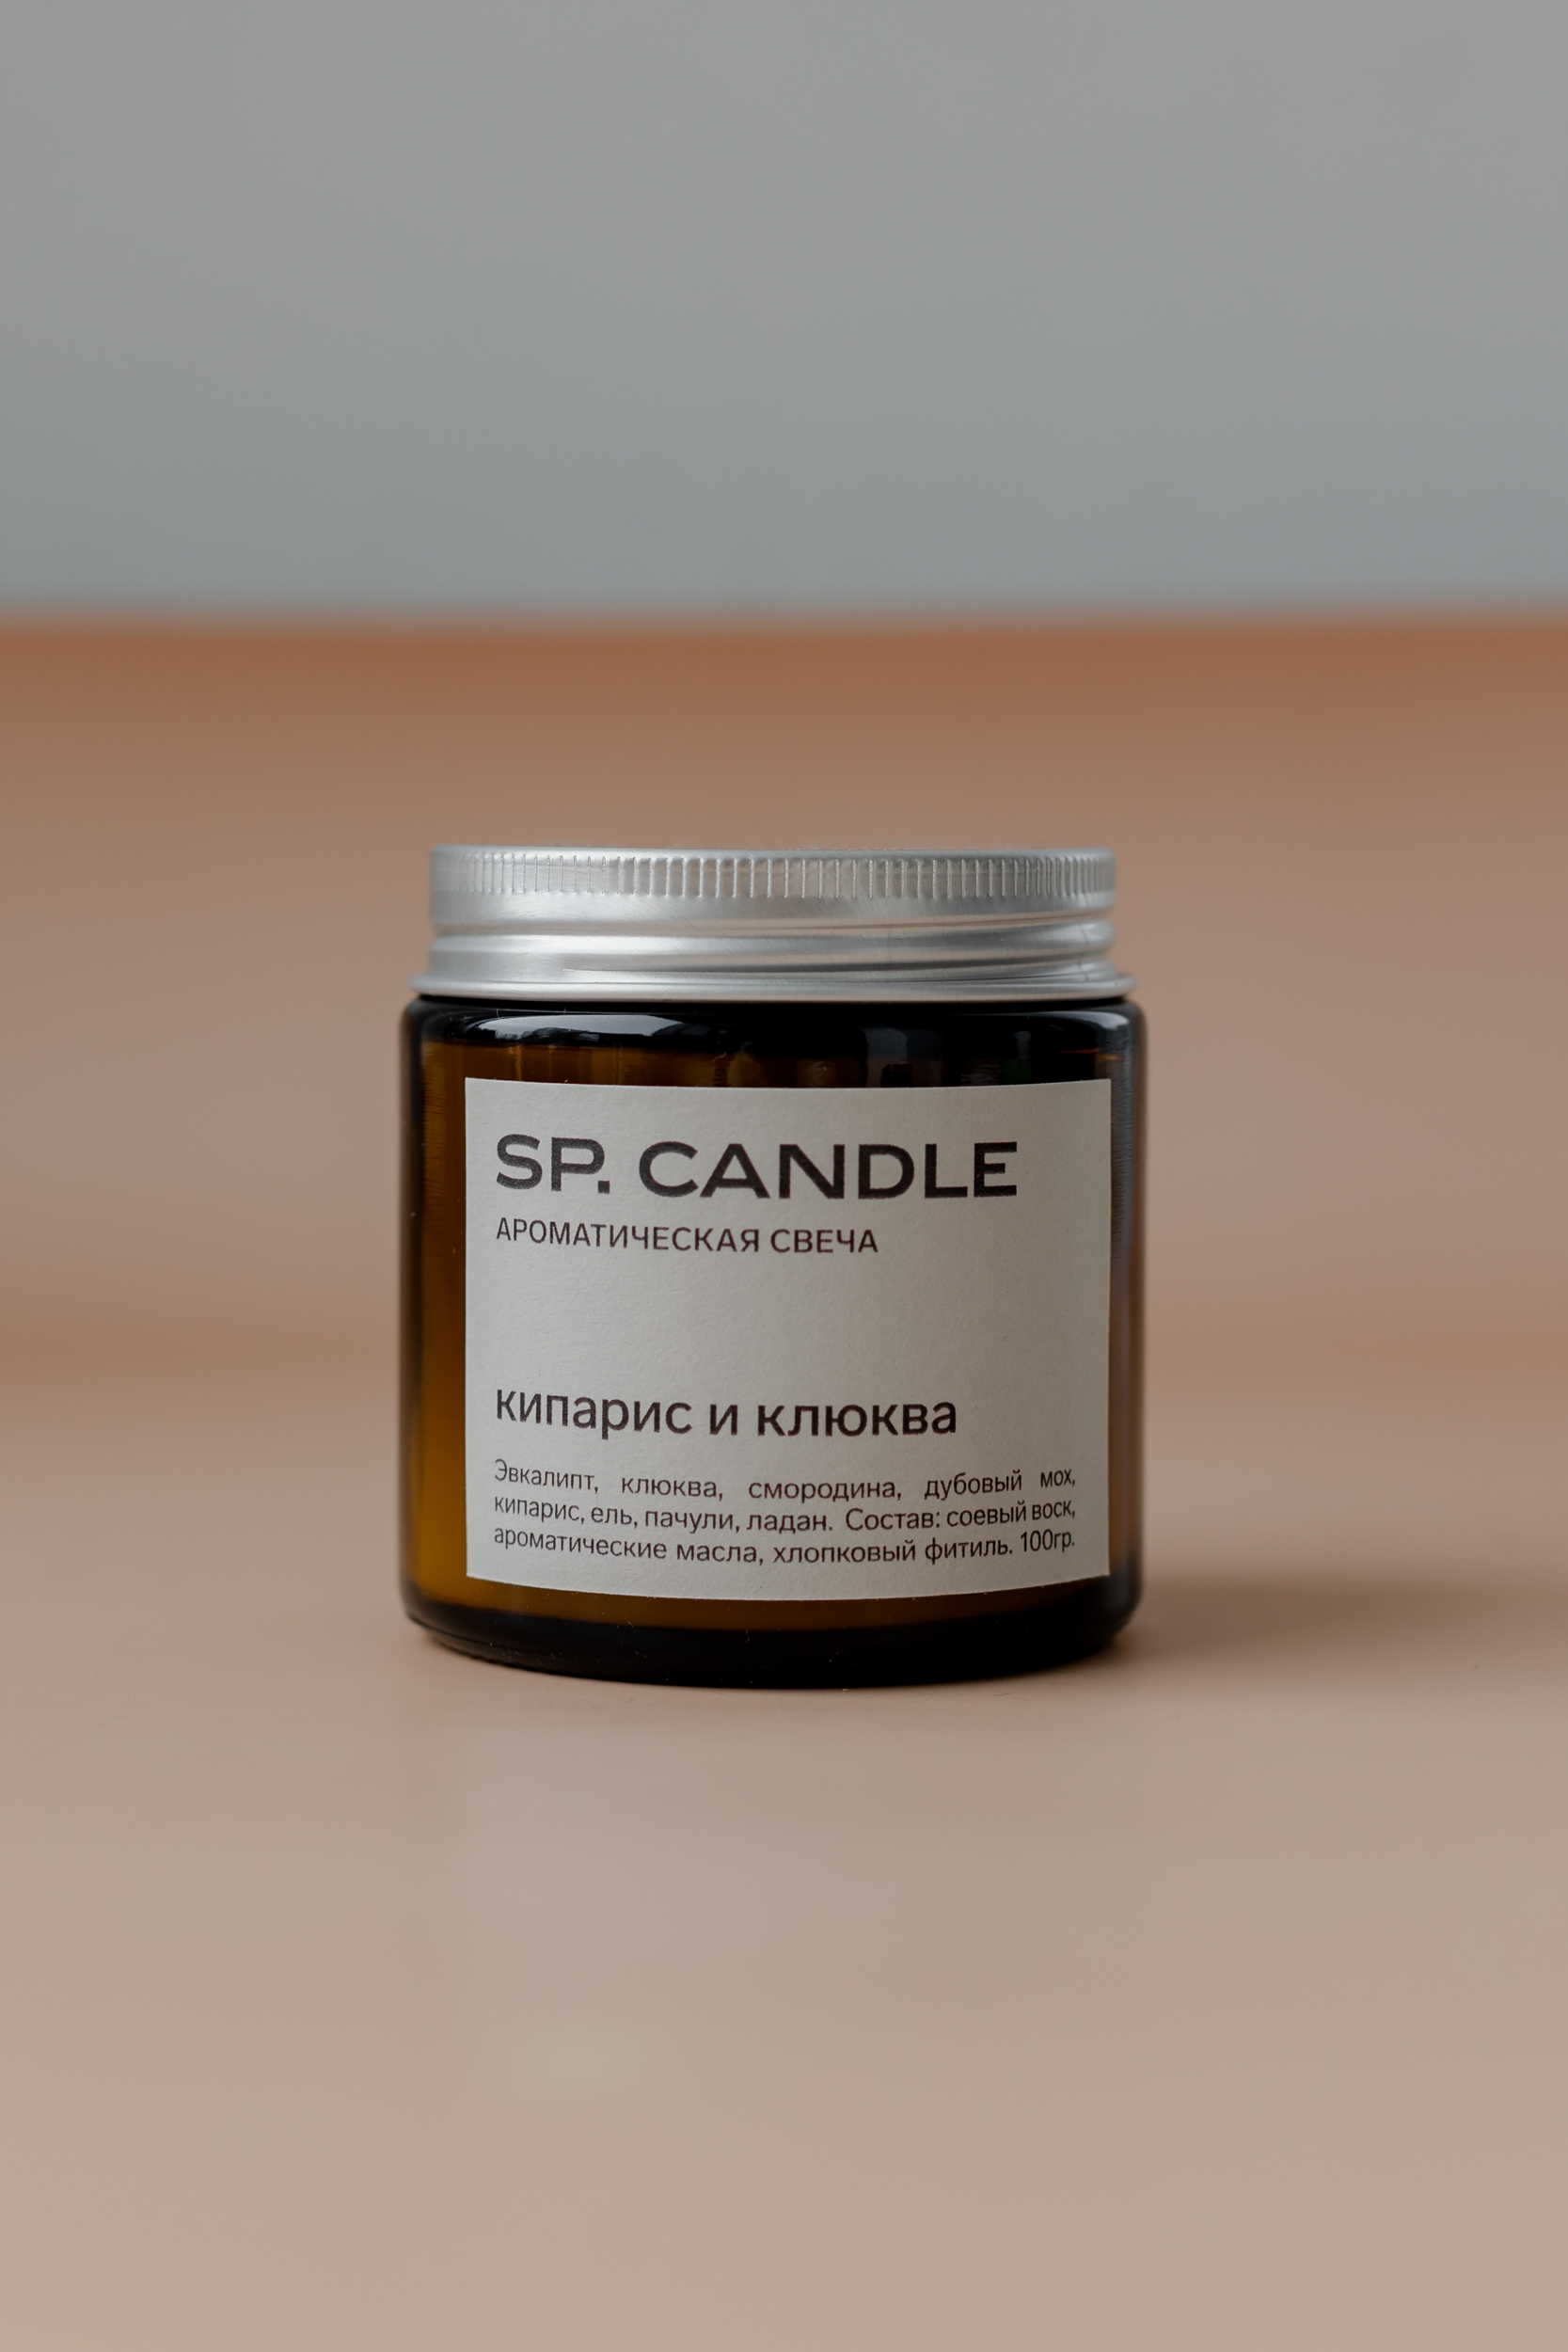 SP. CANDLE Ароматическая свеча Кипарис и клюква, 100г - фото 1